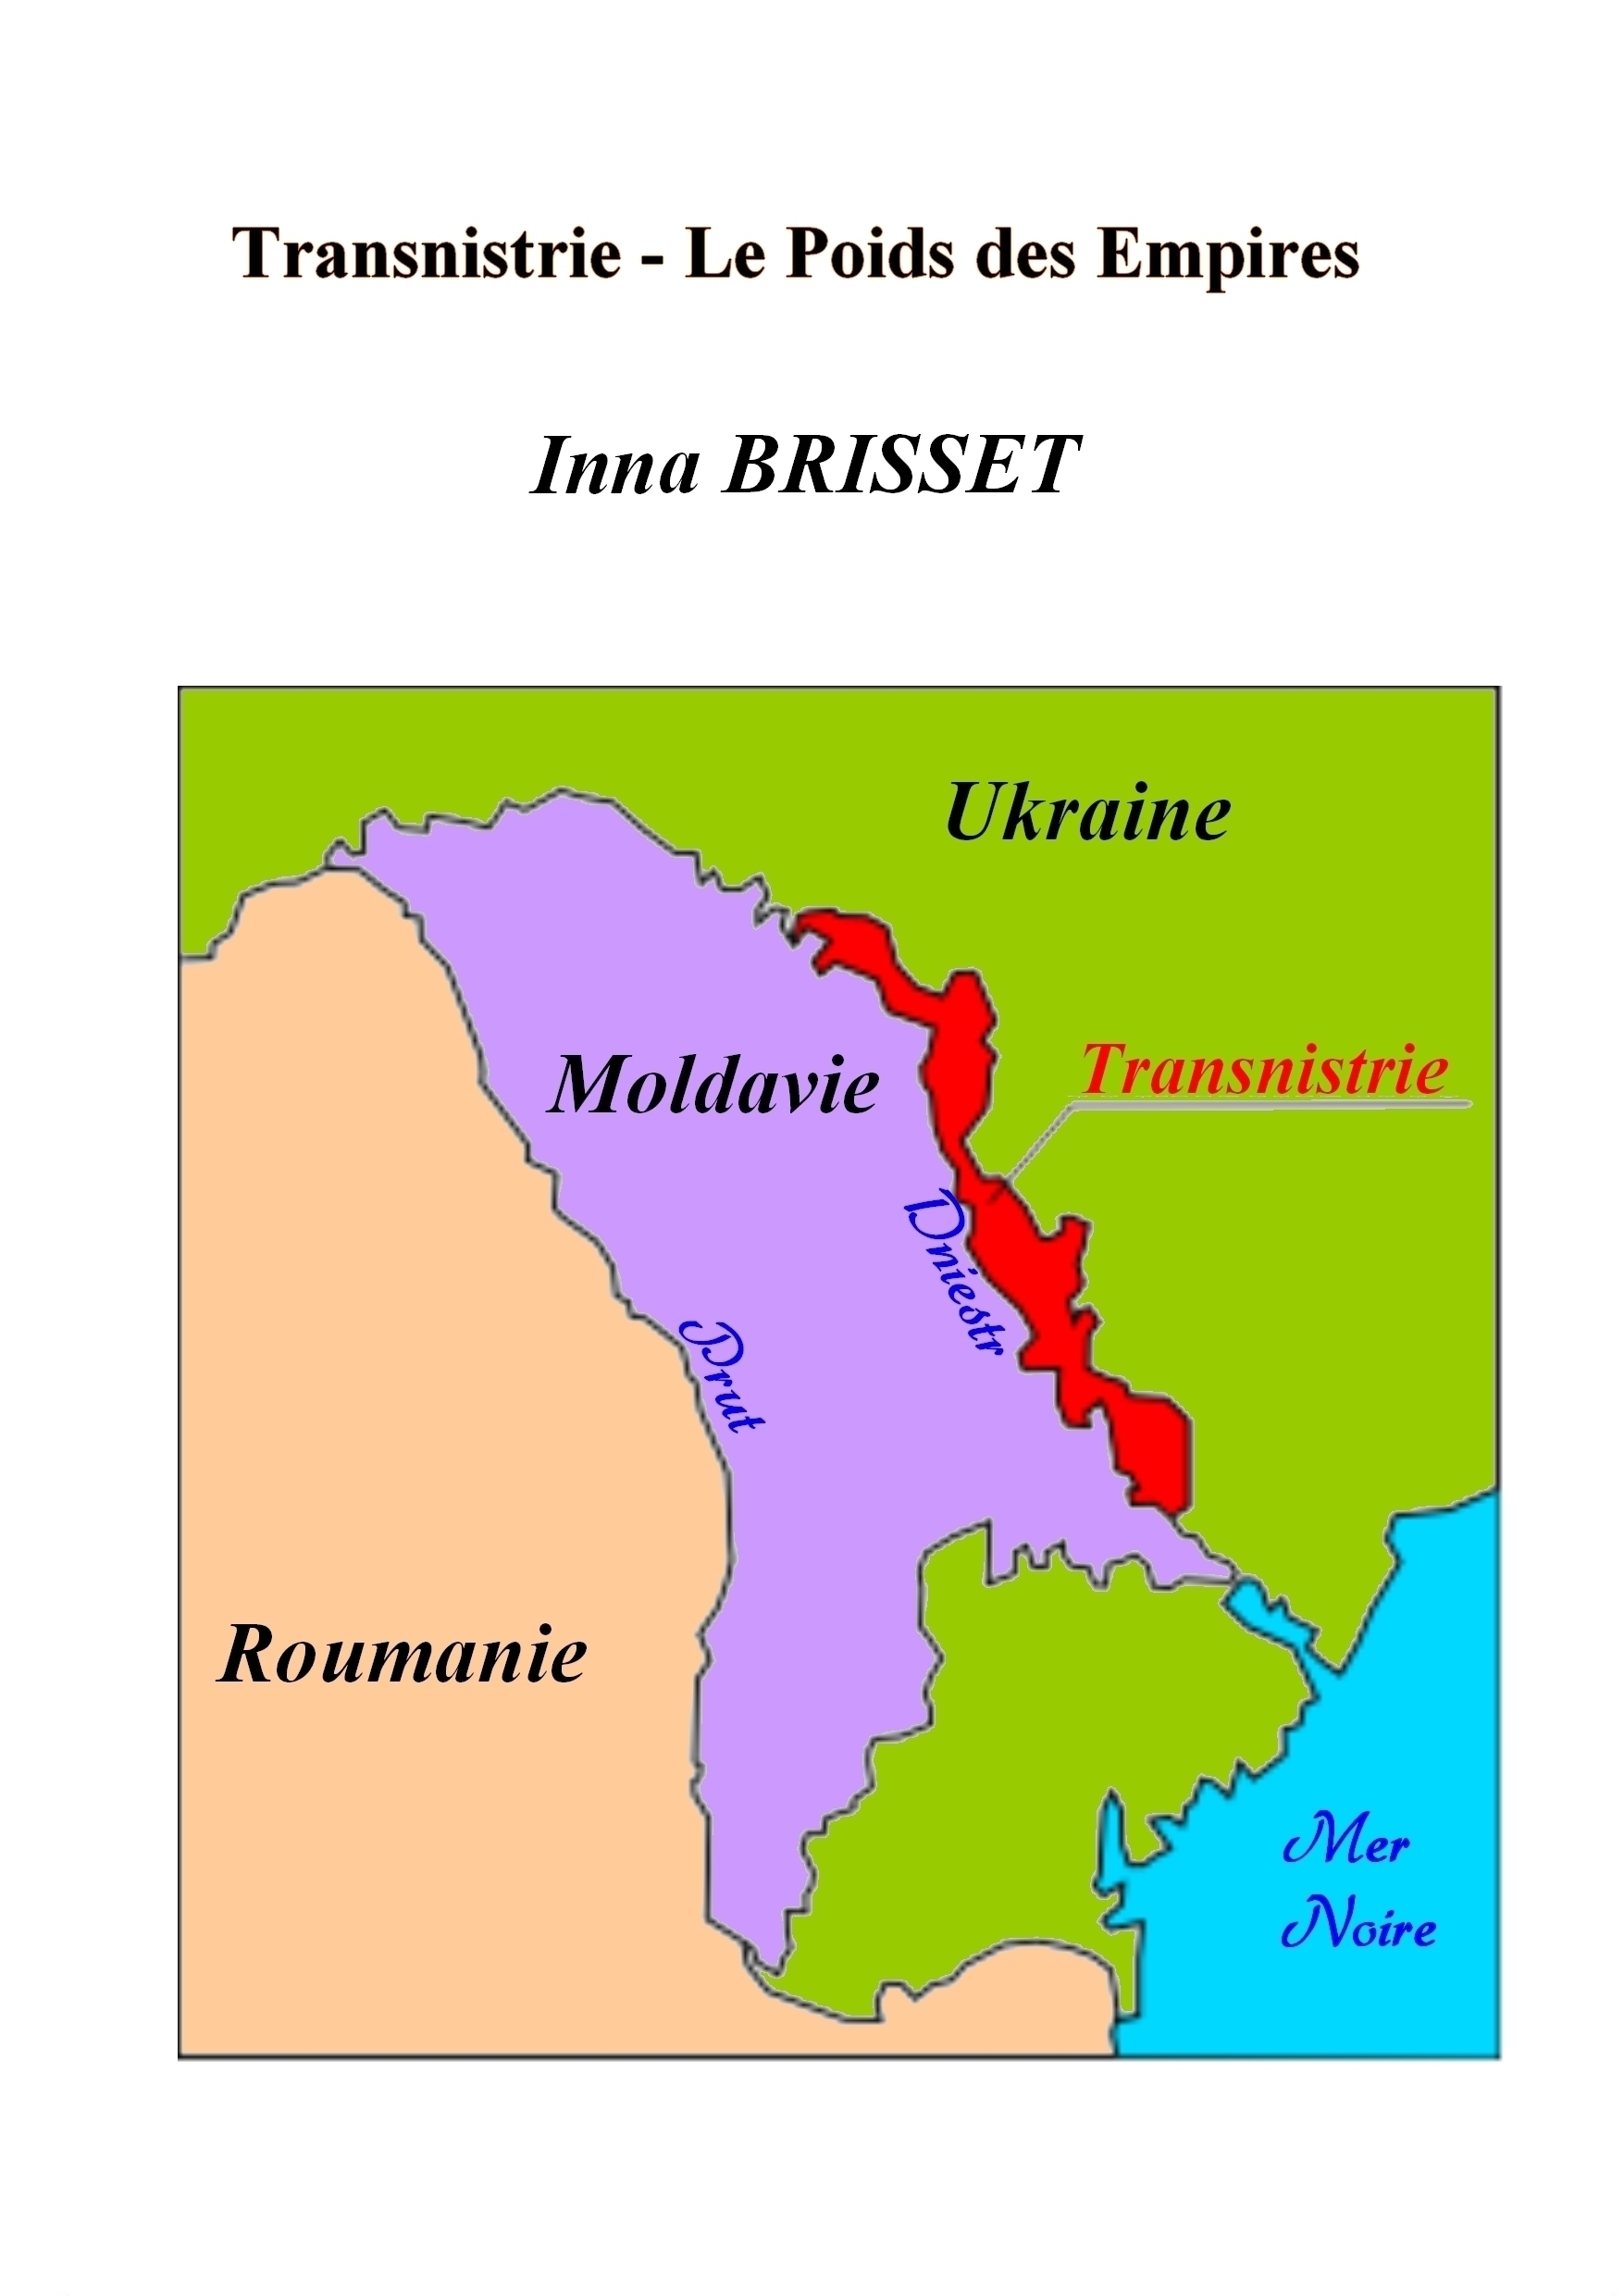 Transnistrie - Le Poids des Empires